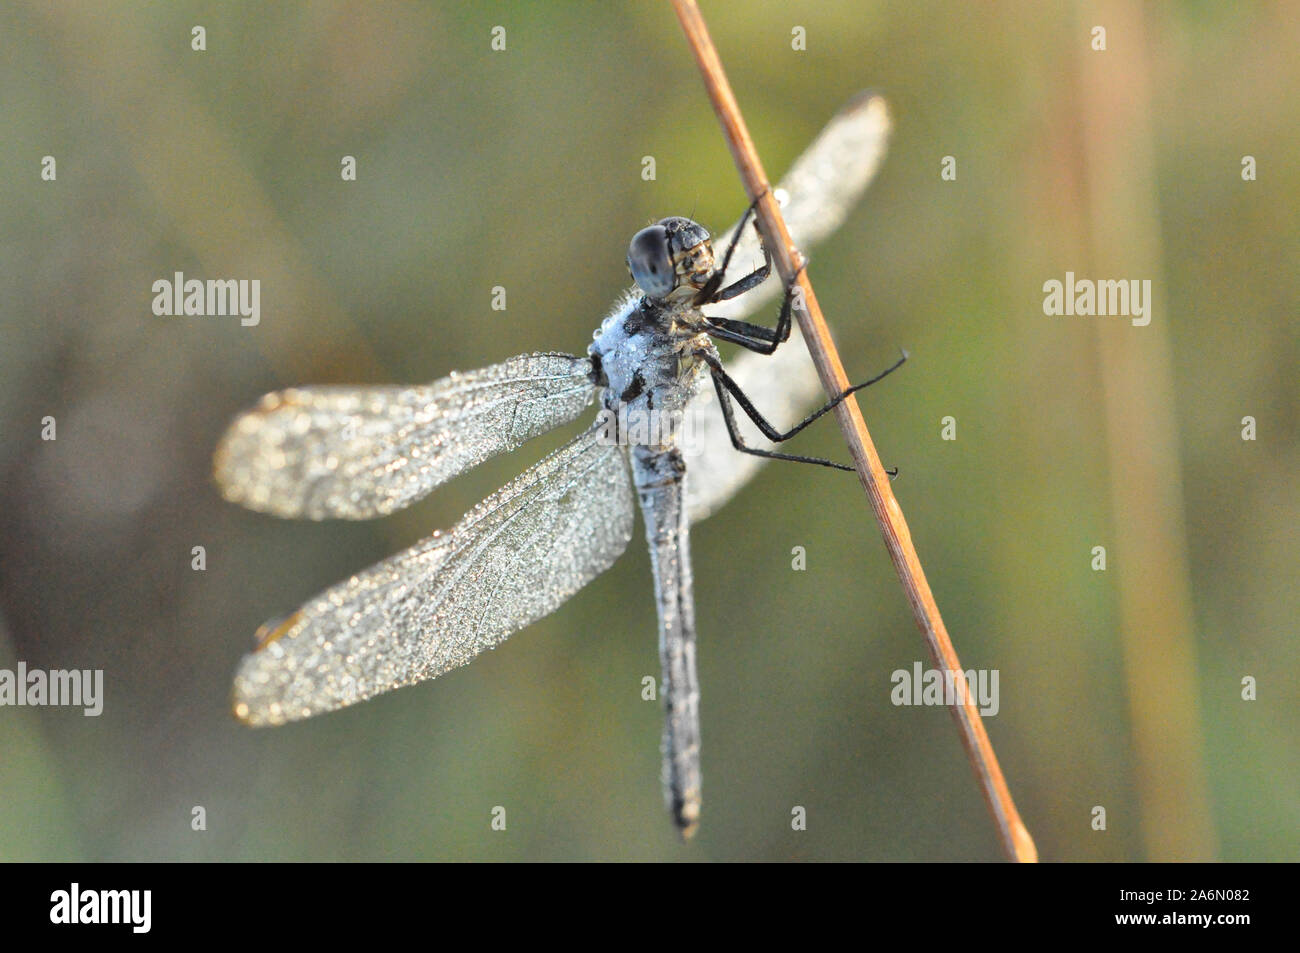 Una libélula es un tipo de insecto perteneciente al orden Odonata, el suborden Epiprocta o, en sentido estricto, la infraorder Anisoptera. Se caracteriza por grandes ojos multifacéticos, dos pares de fuertes alas transparentes y cuerpo alargado. Las libélulas son similares a damselflies, pero los adultos pueden ser diferenciados por el hecho de que las alas de la mayoría de las libélulas se celebren fuera de, y perpendicular al cuerpo cuando está en reposo. Aunque las libélulas poseen 6 patas como cualquier otro insecto, que no son capaces de caminar. Las libélulas son valiosos los depredadores que se comen los mosquitos y otros s Foto de stock